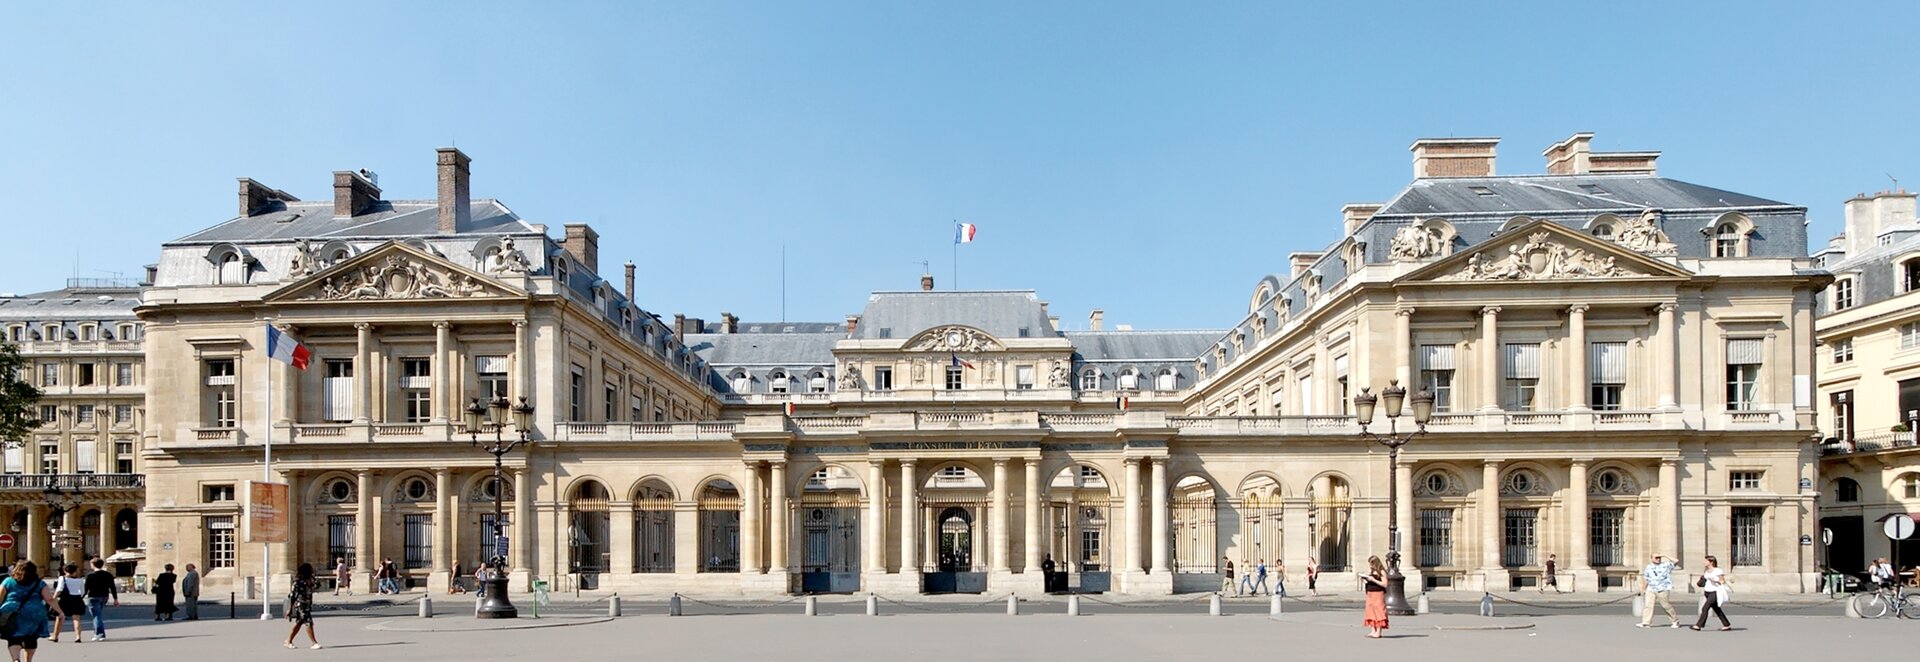 Zdjęcie przedstawia duży, neoklasycystyczny, dwuskrzydłowy pałac. Fronton pałacu wsparty jest na ośmiu kolumnach. Przed pałacem znajduje się wyłożony kostką plac.